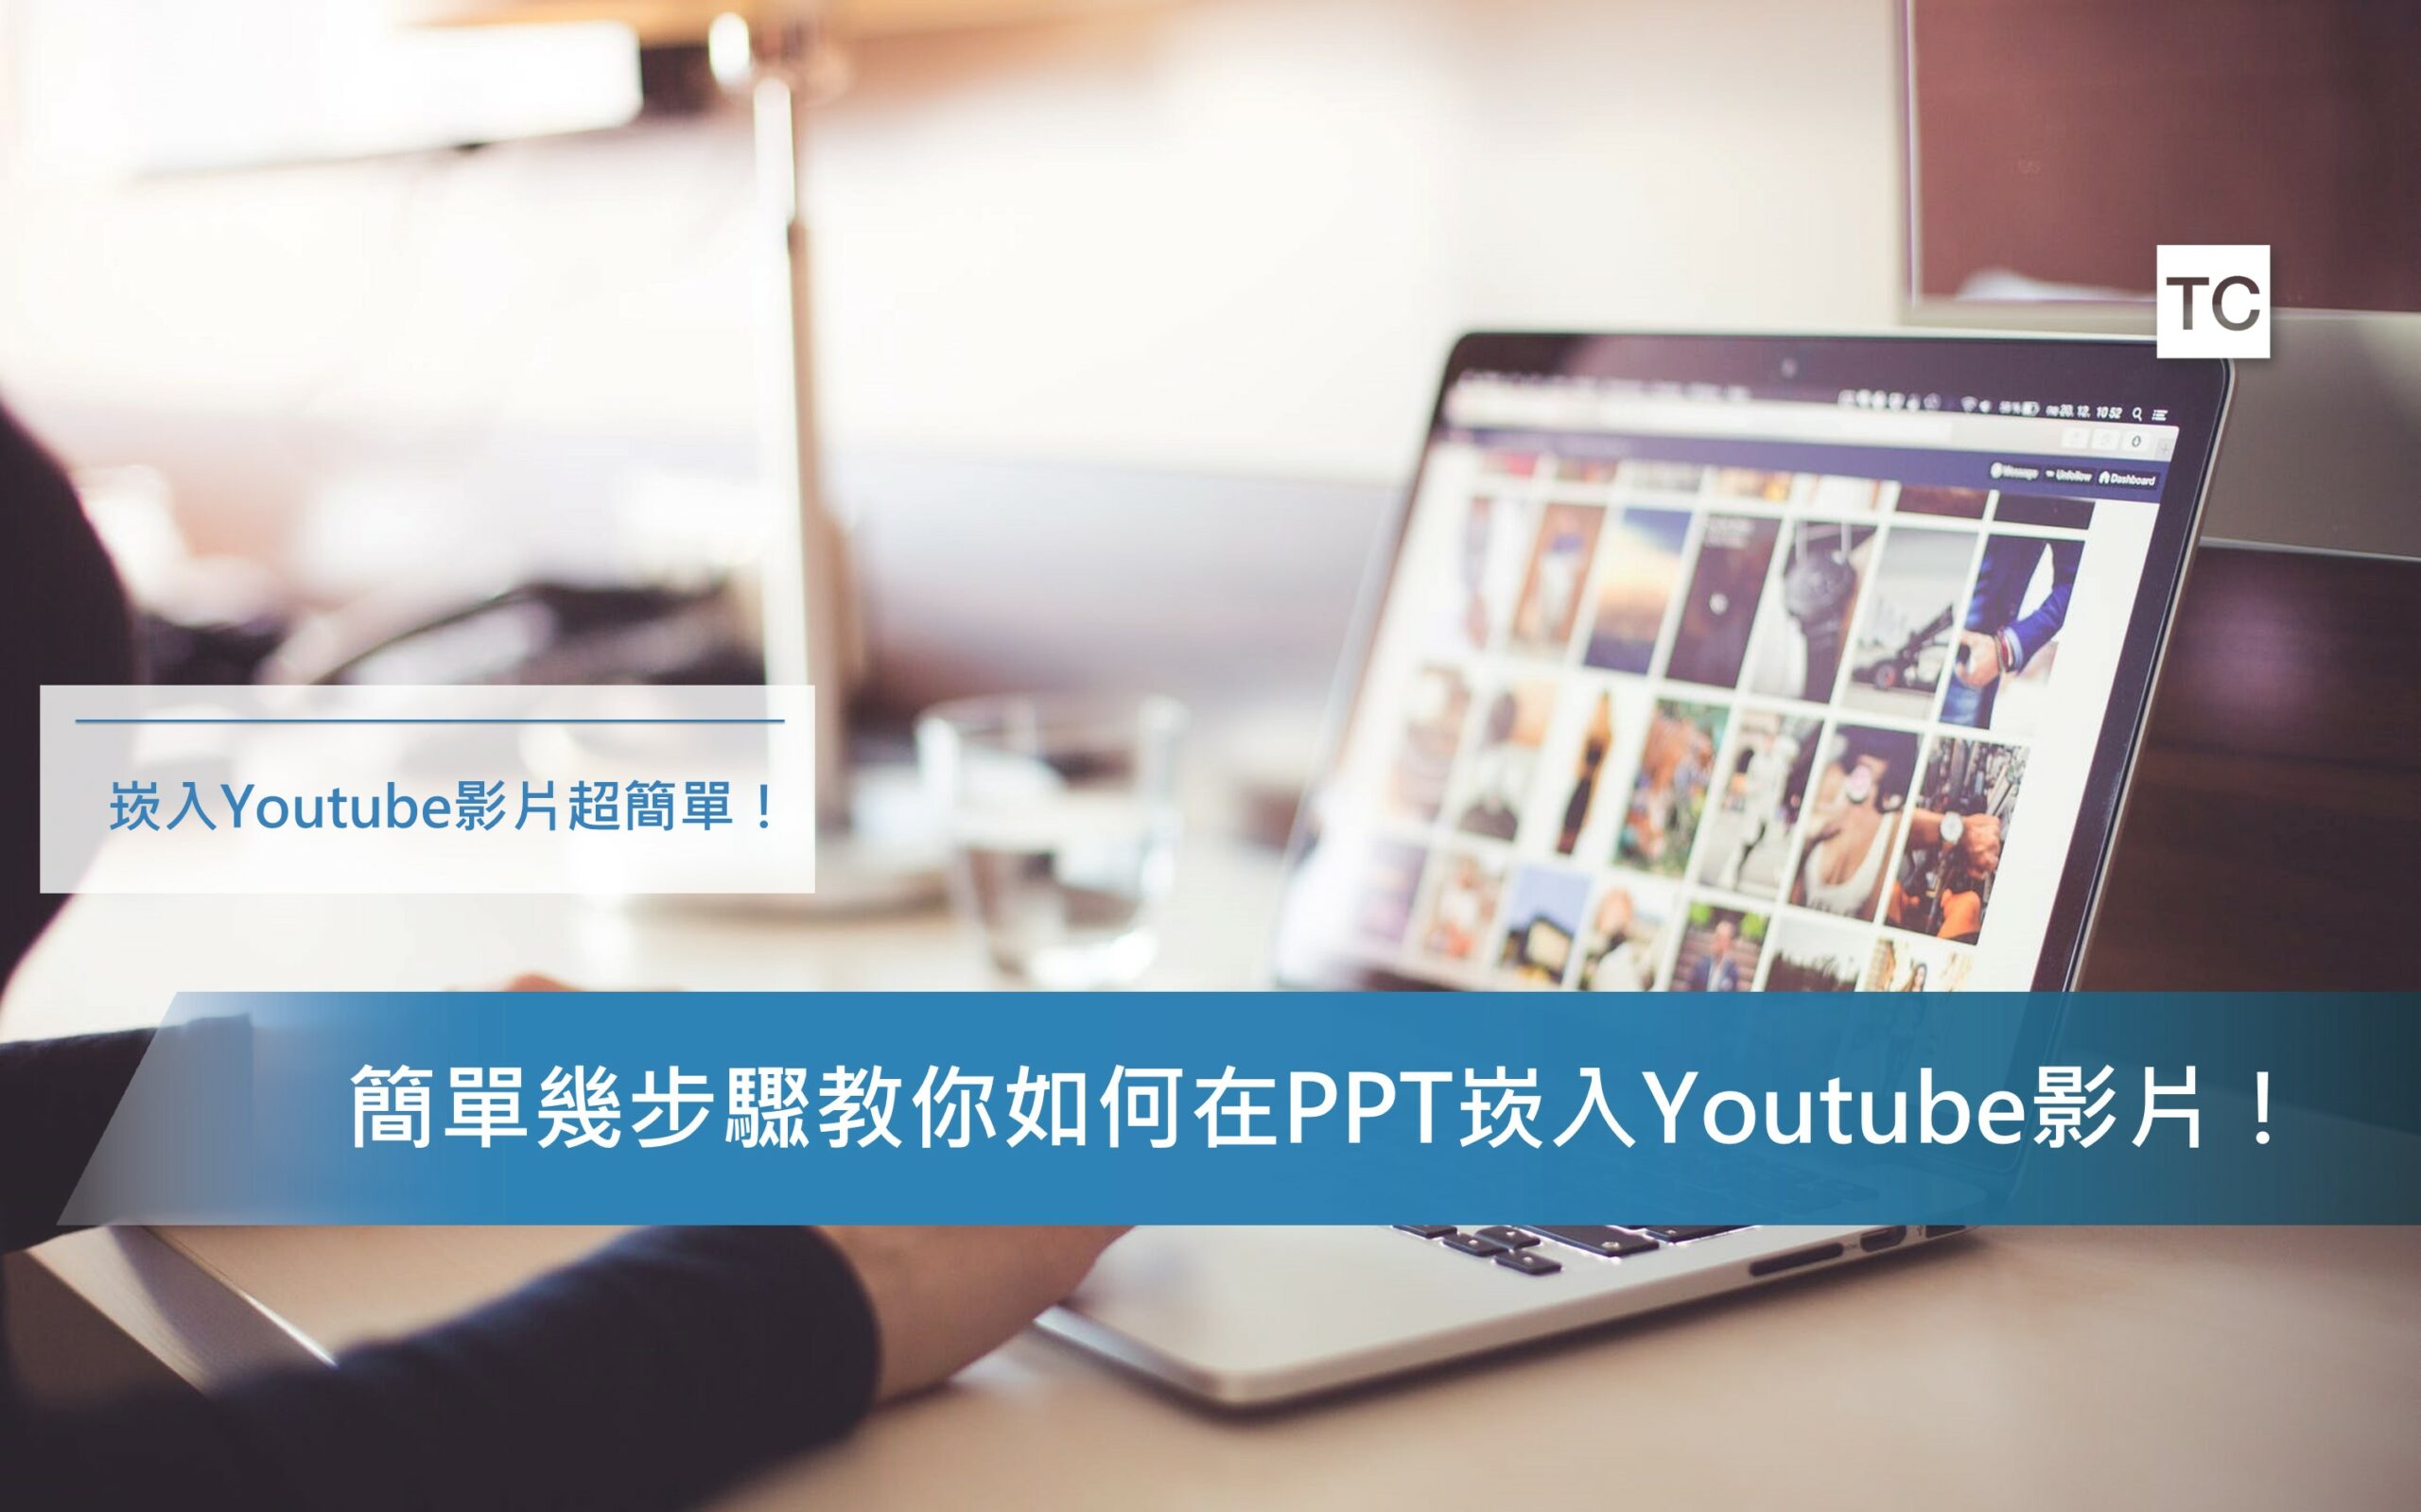 PPT教學｜想在PPT放youtube影片？簡單教你在PPT崁入影片！